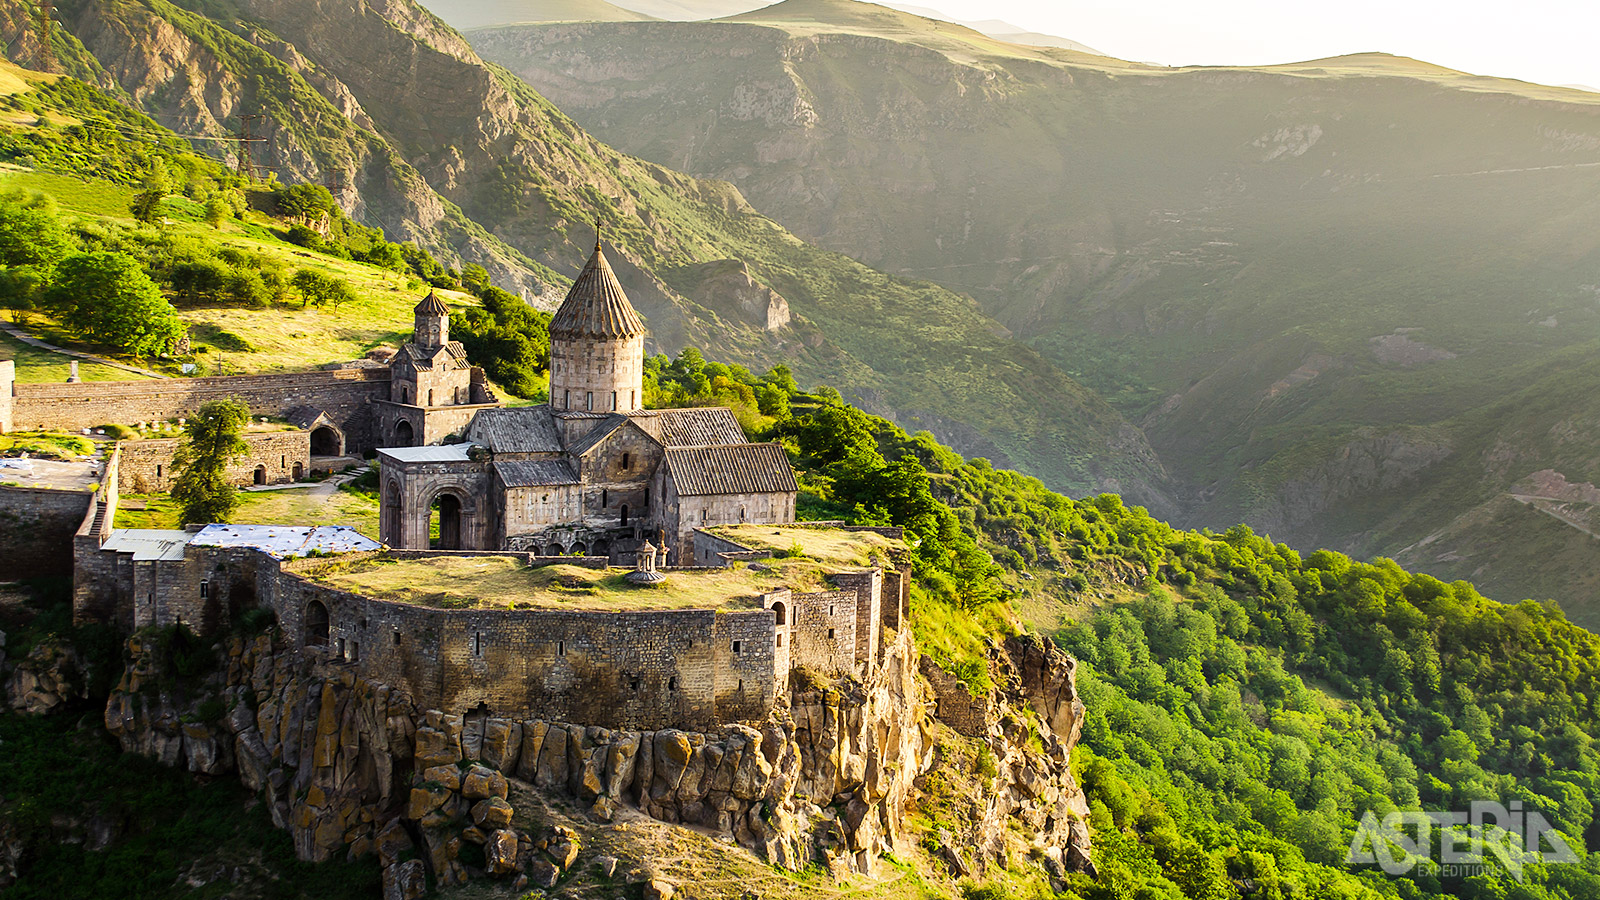 Het eeuwenoude Tatev klooster is één van de publiekstrekkers in Armenië en staat terecht op de lijst van Unesco